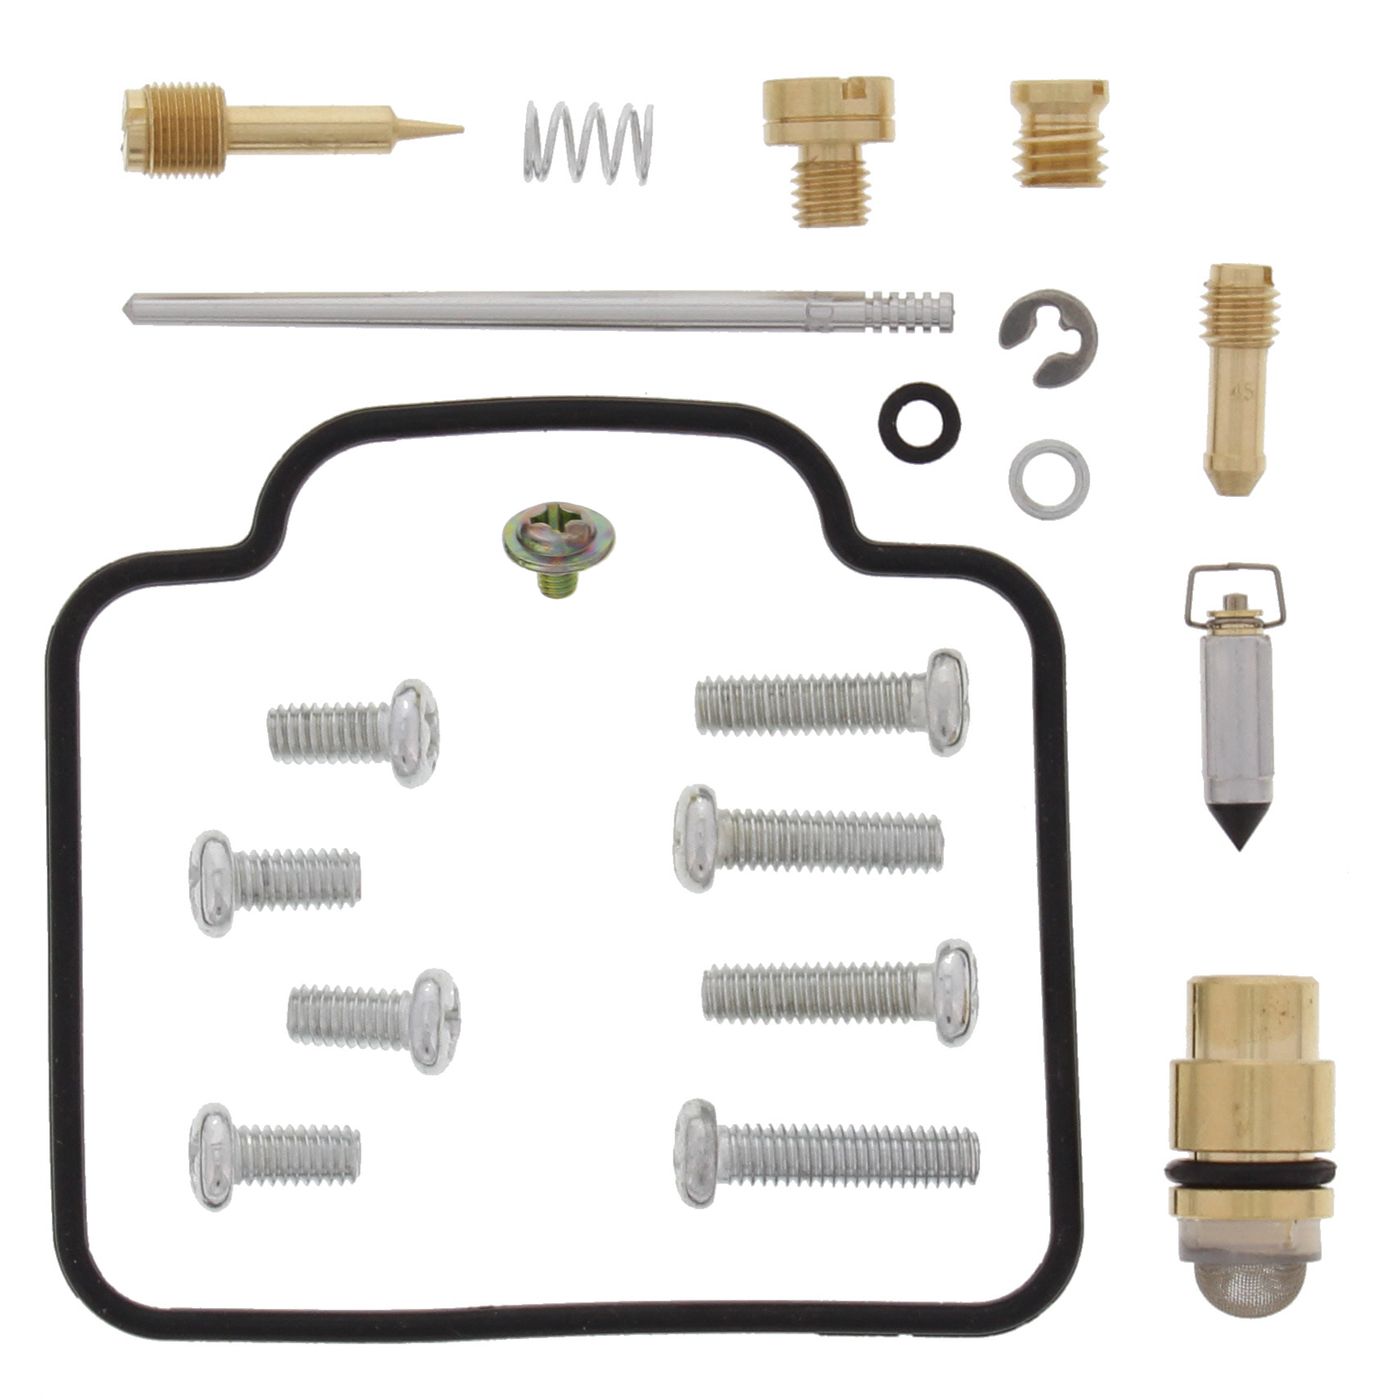 Wrp Carb Repair Kits - WRP261089 image